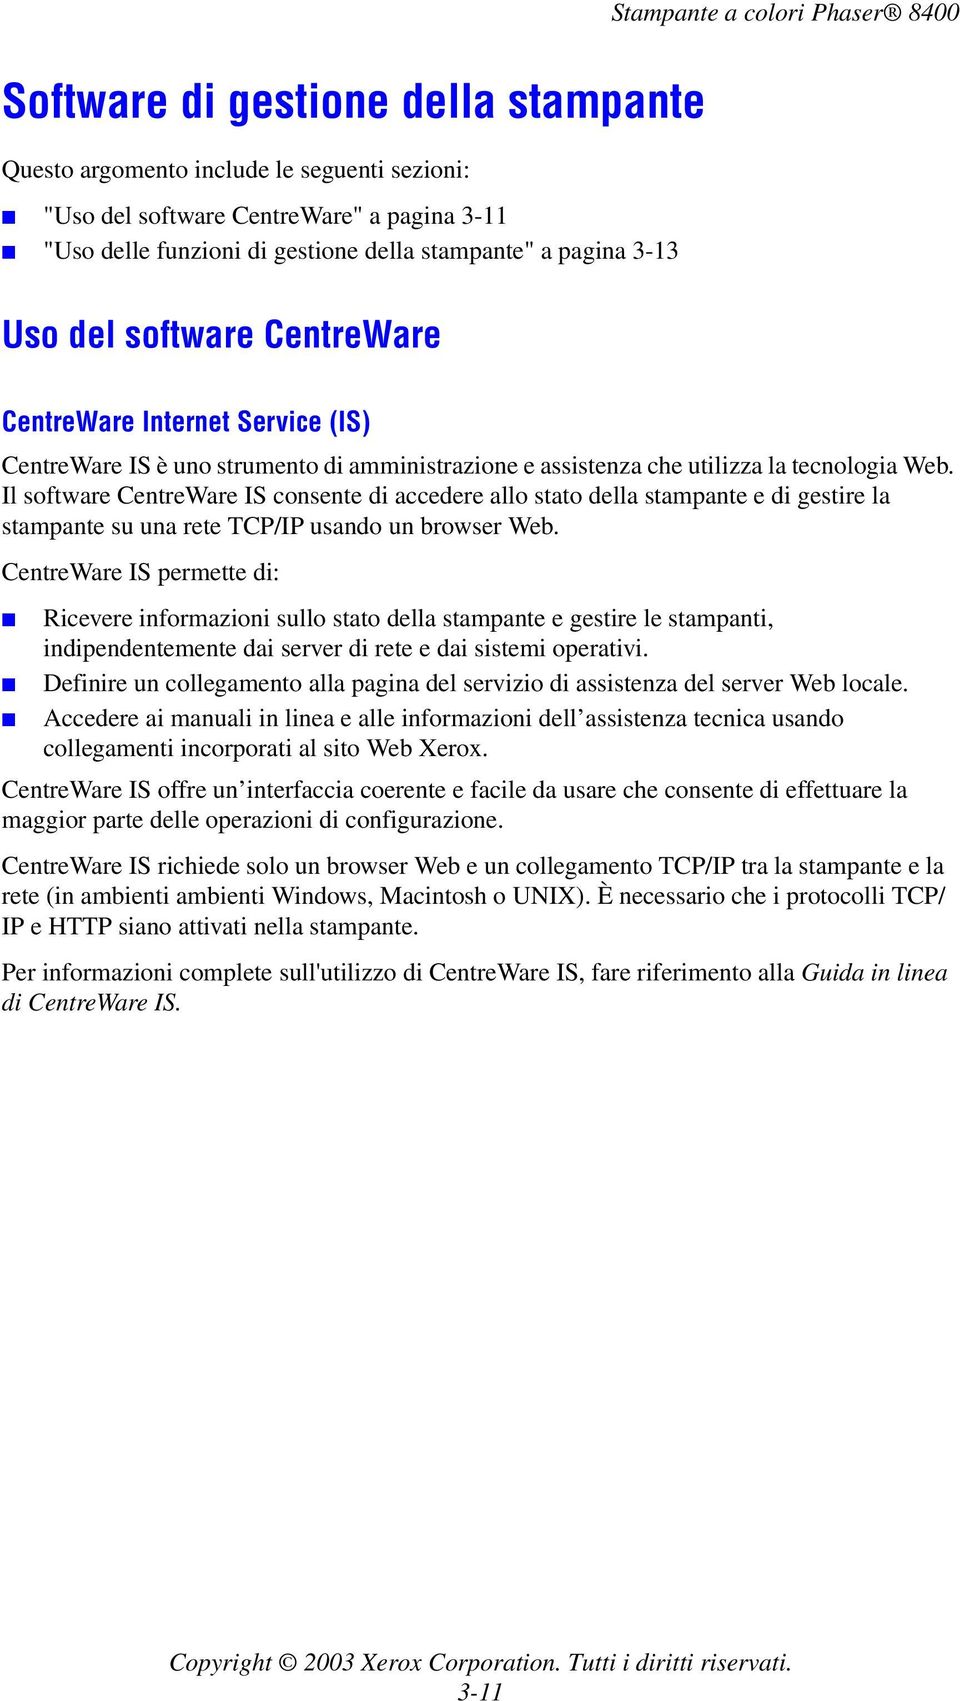 Il software CentreWare IS consente di accedere allo stato della stampante e di gestire la stampante su una rete TCP/IP usando un browser Web.